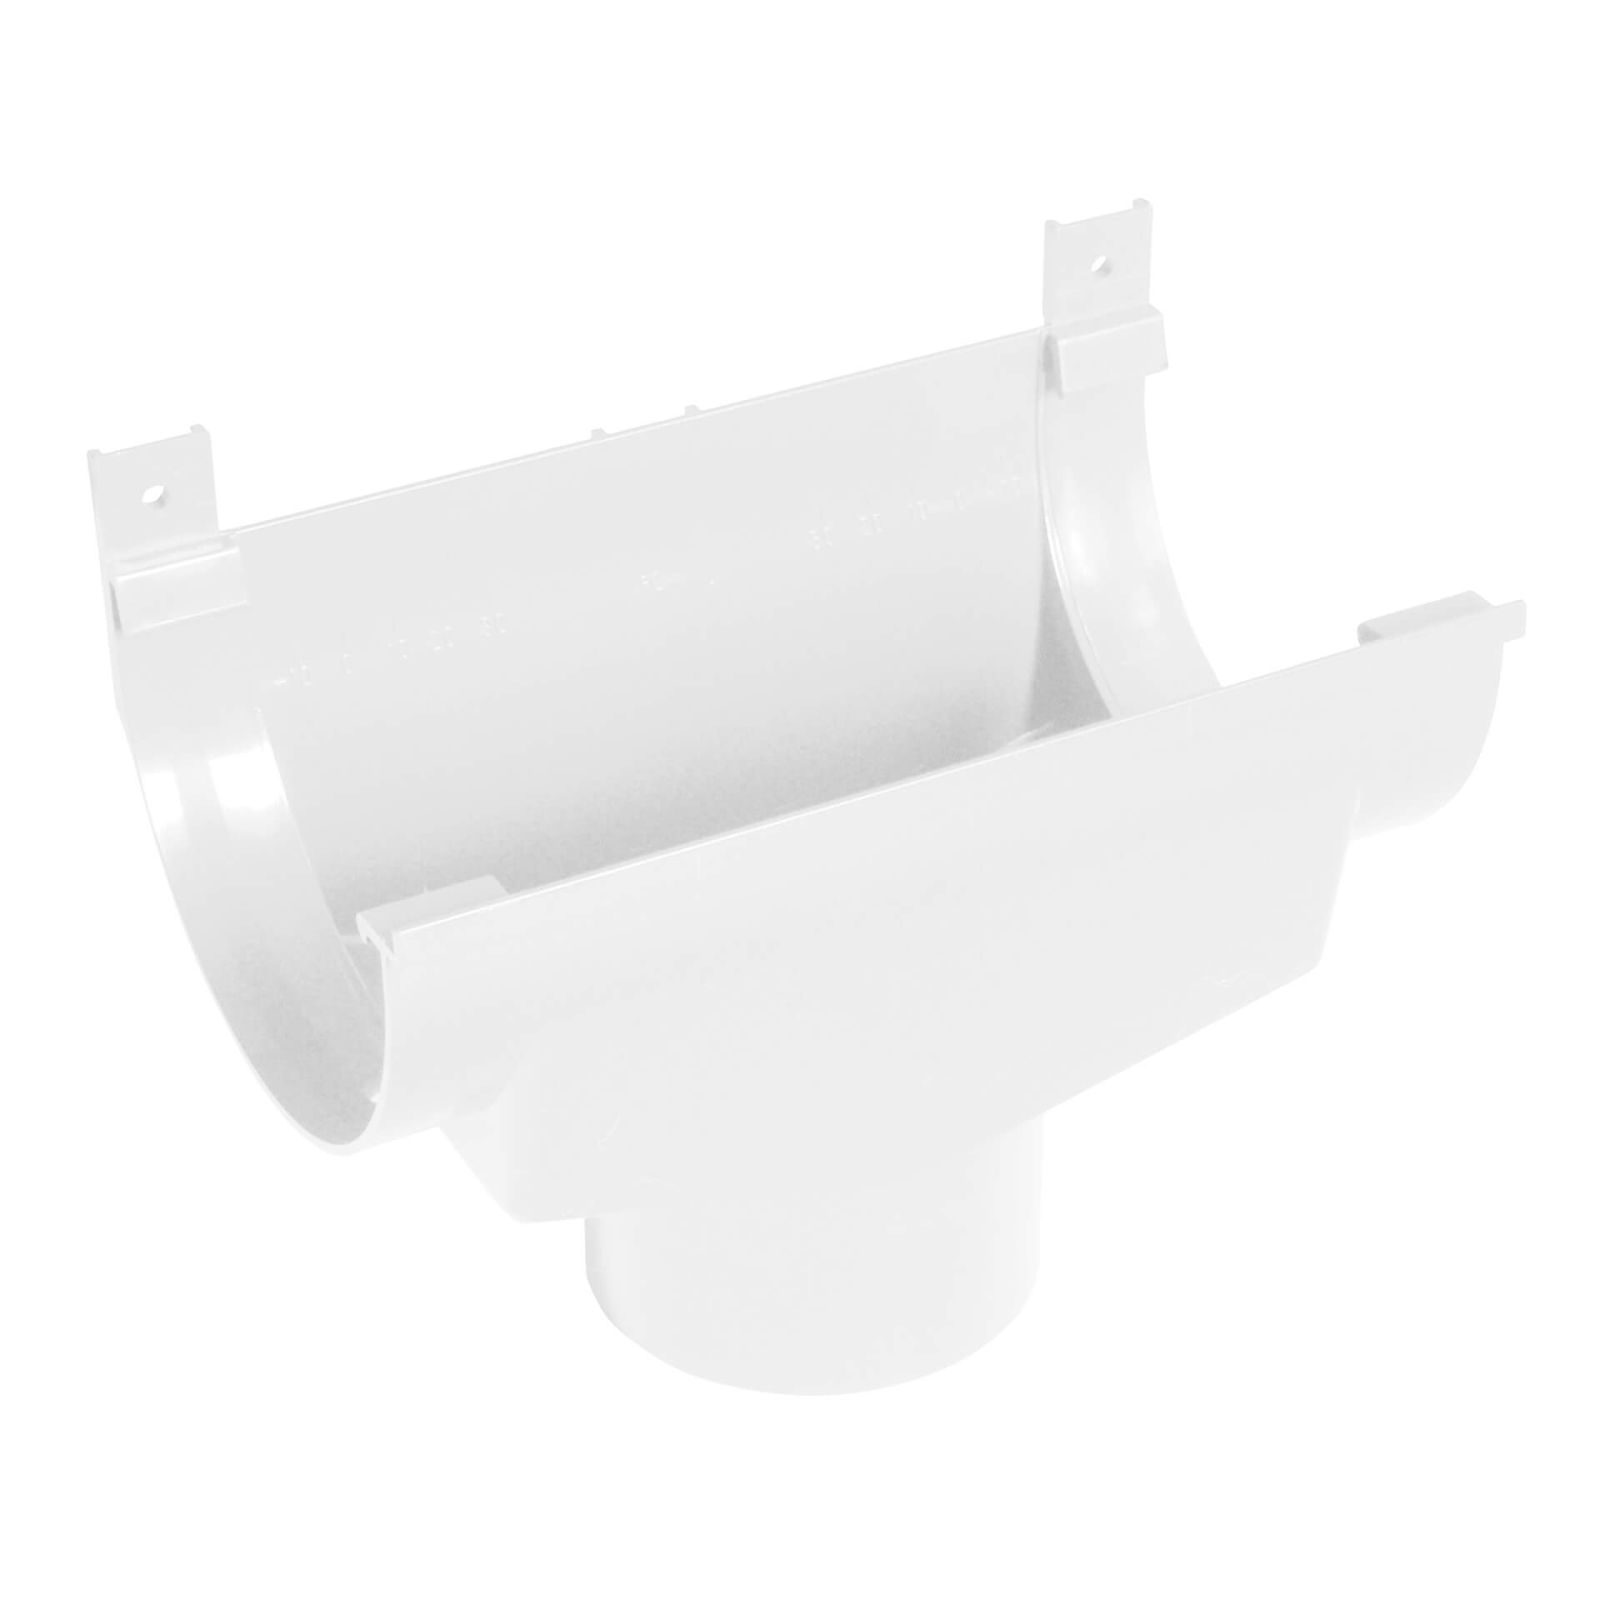 Kunststoff Dachrinnen Sparpaket 4 m | Ø 125/90 mm | Farbe Weiß #5